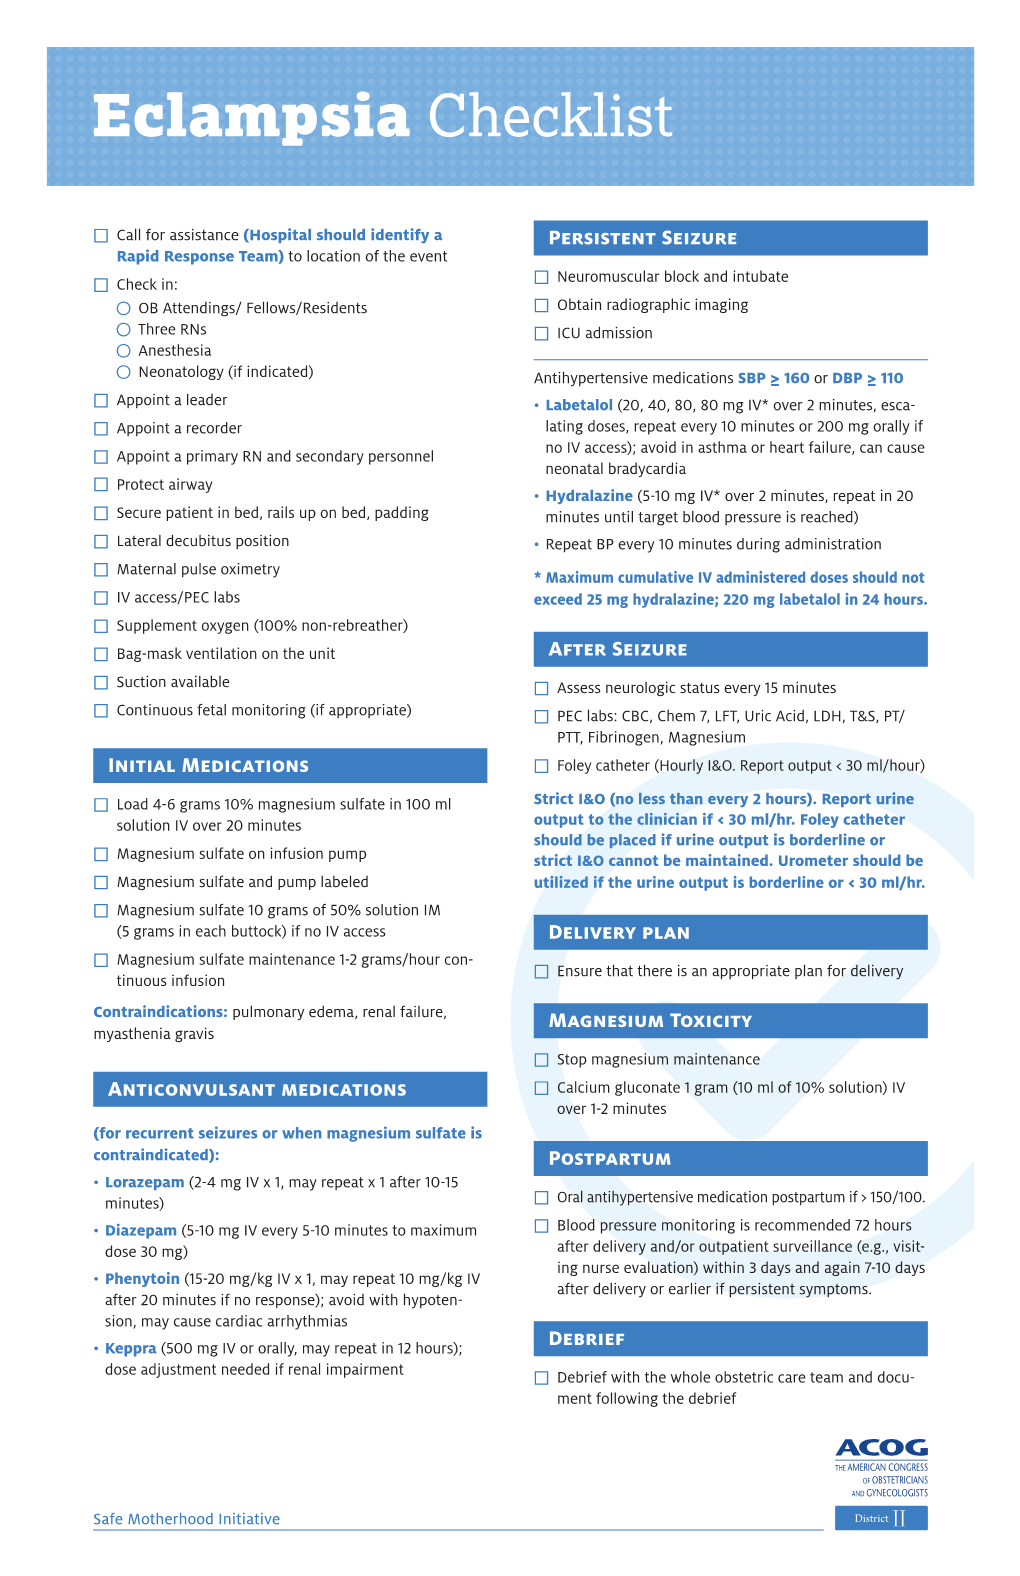 ACOG District II Eclampsia Checklist